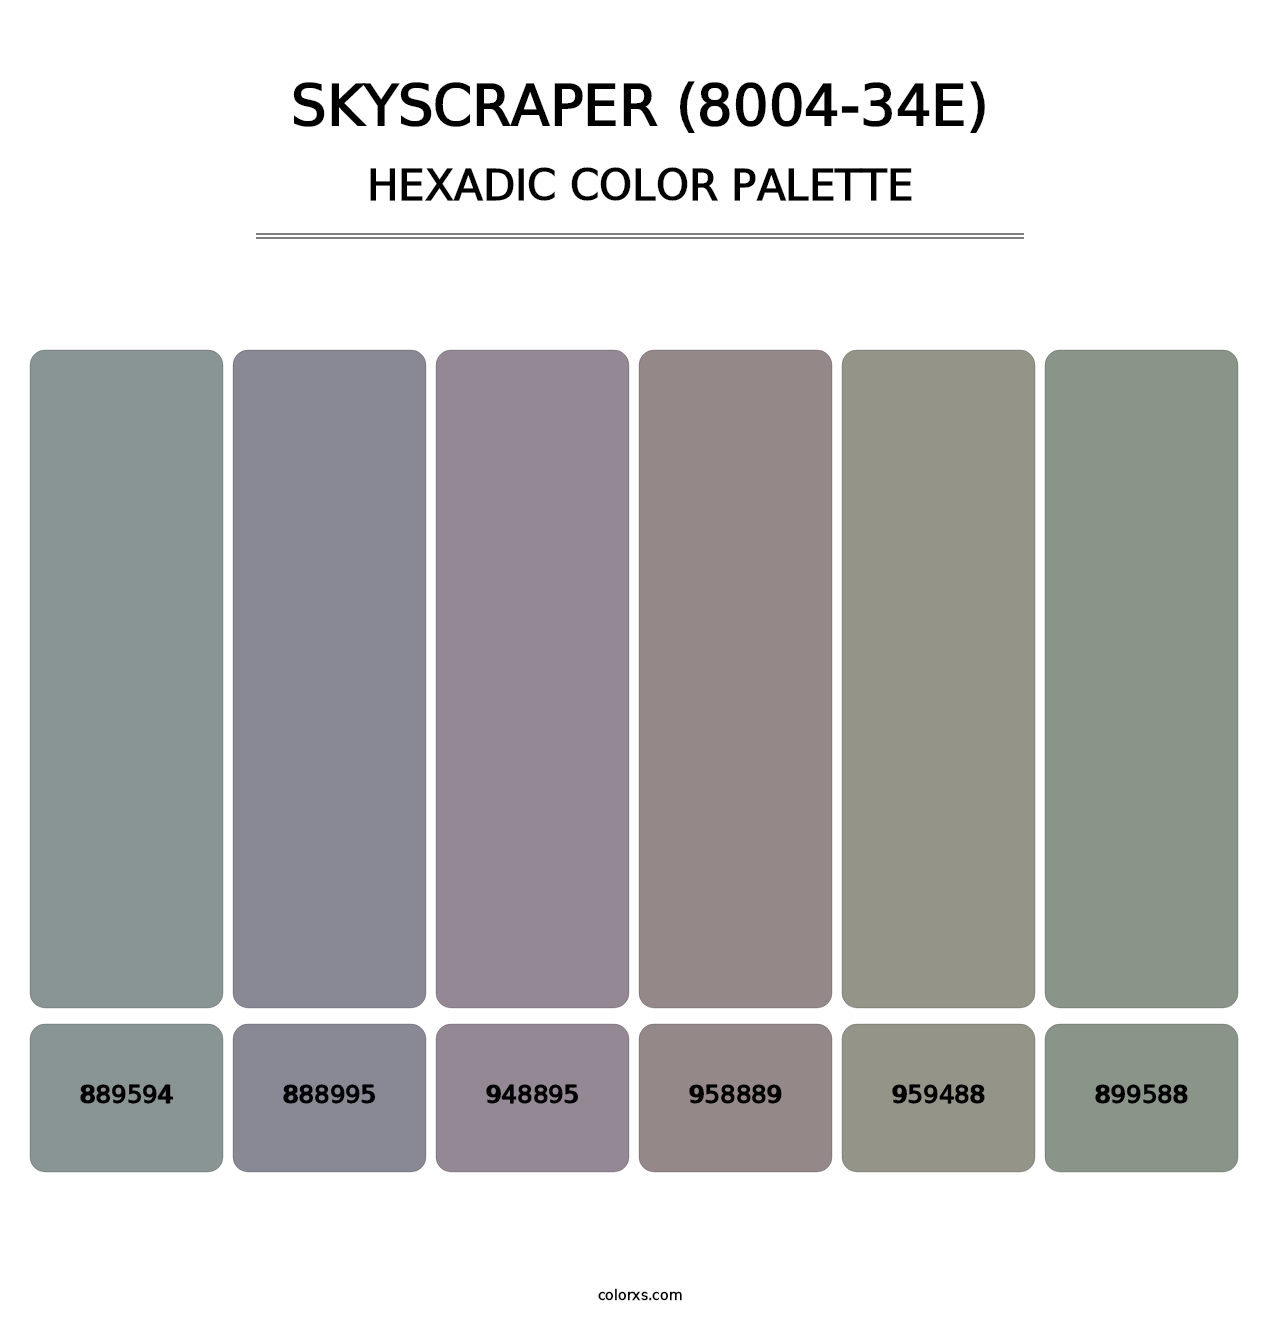 Skyscraper (8004-34E) - Hexadic Color Palette